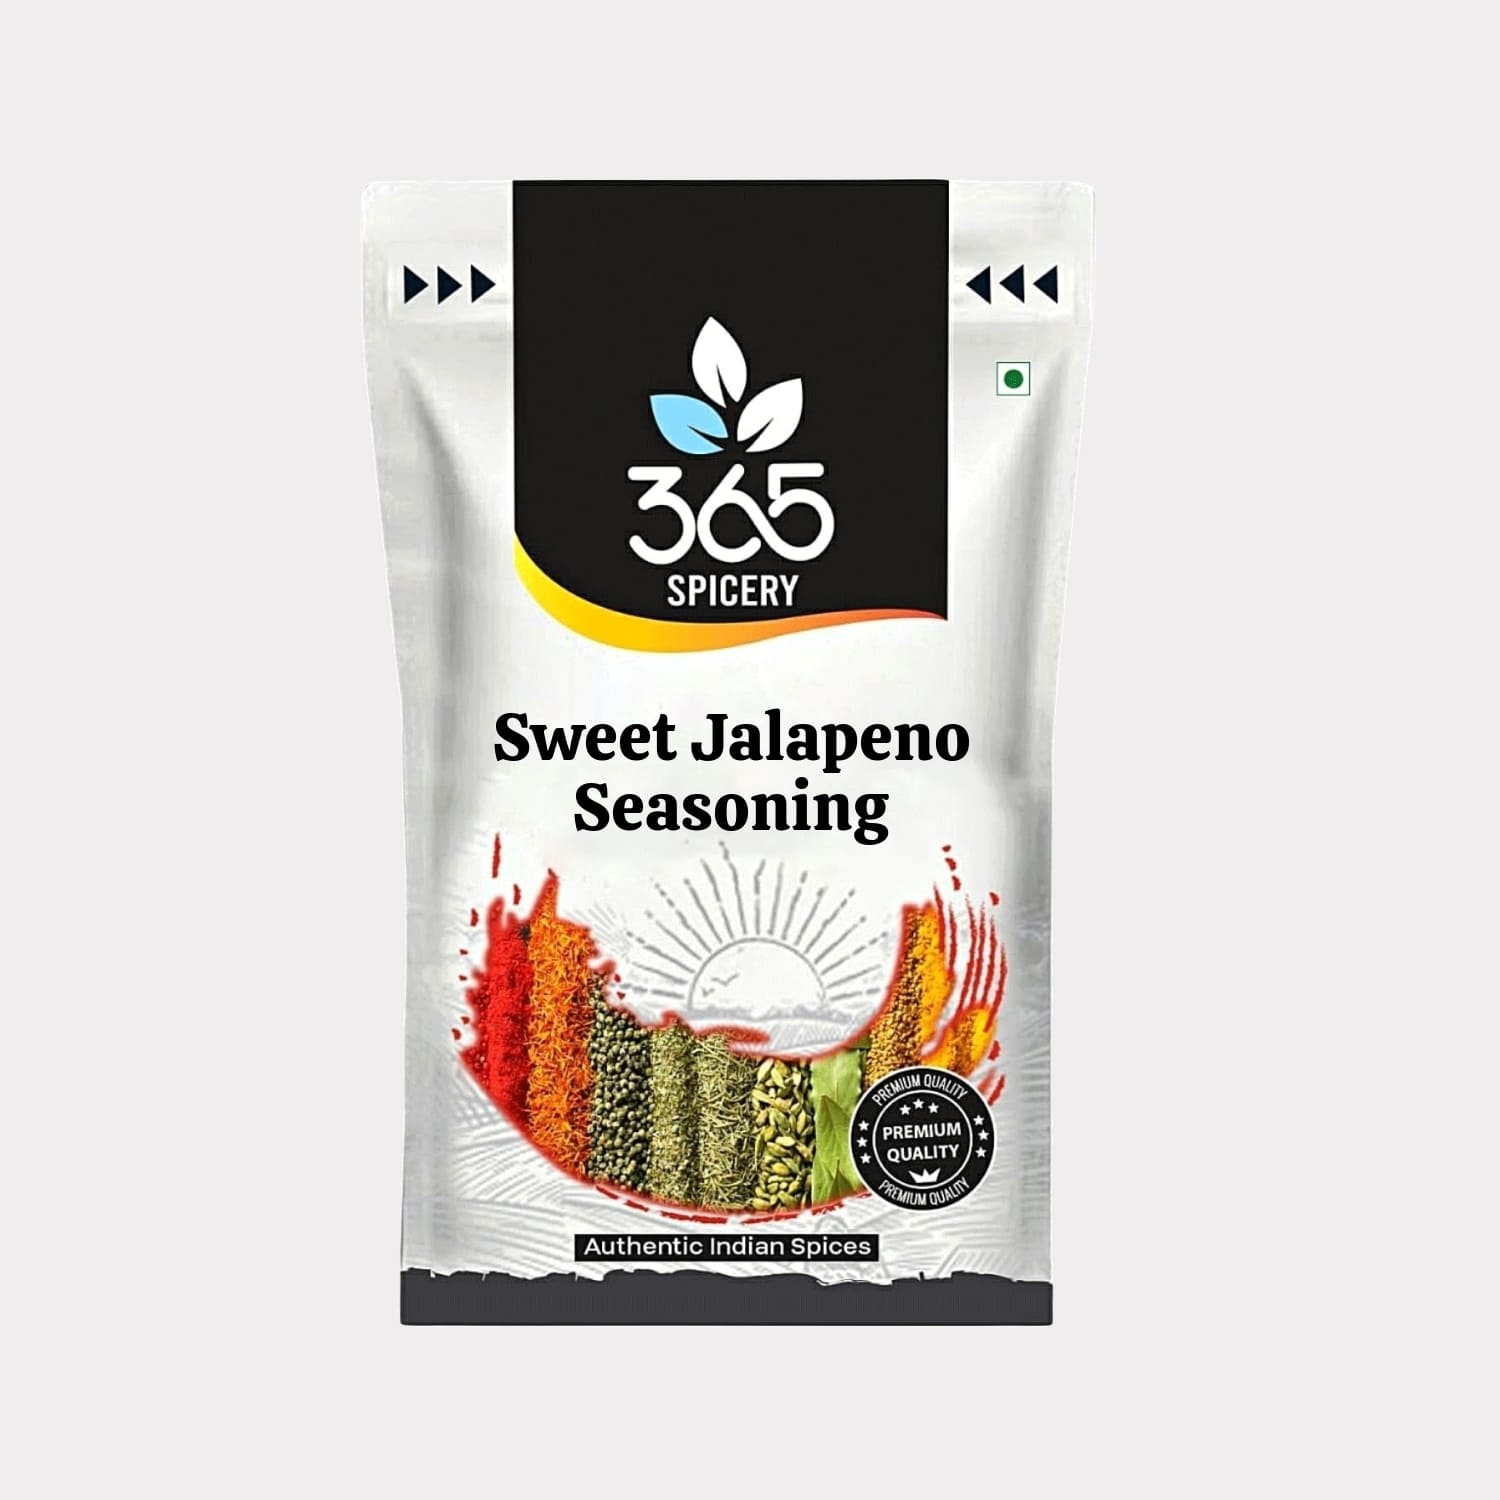 Sweet Jalapeno Seasoning